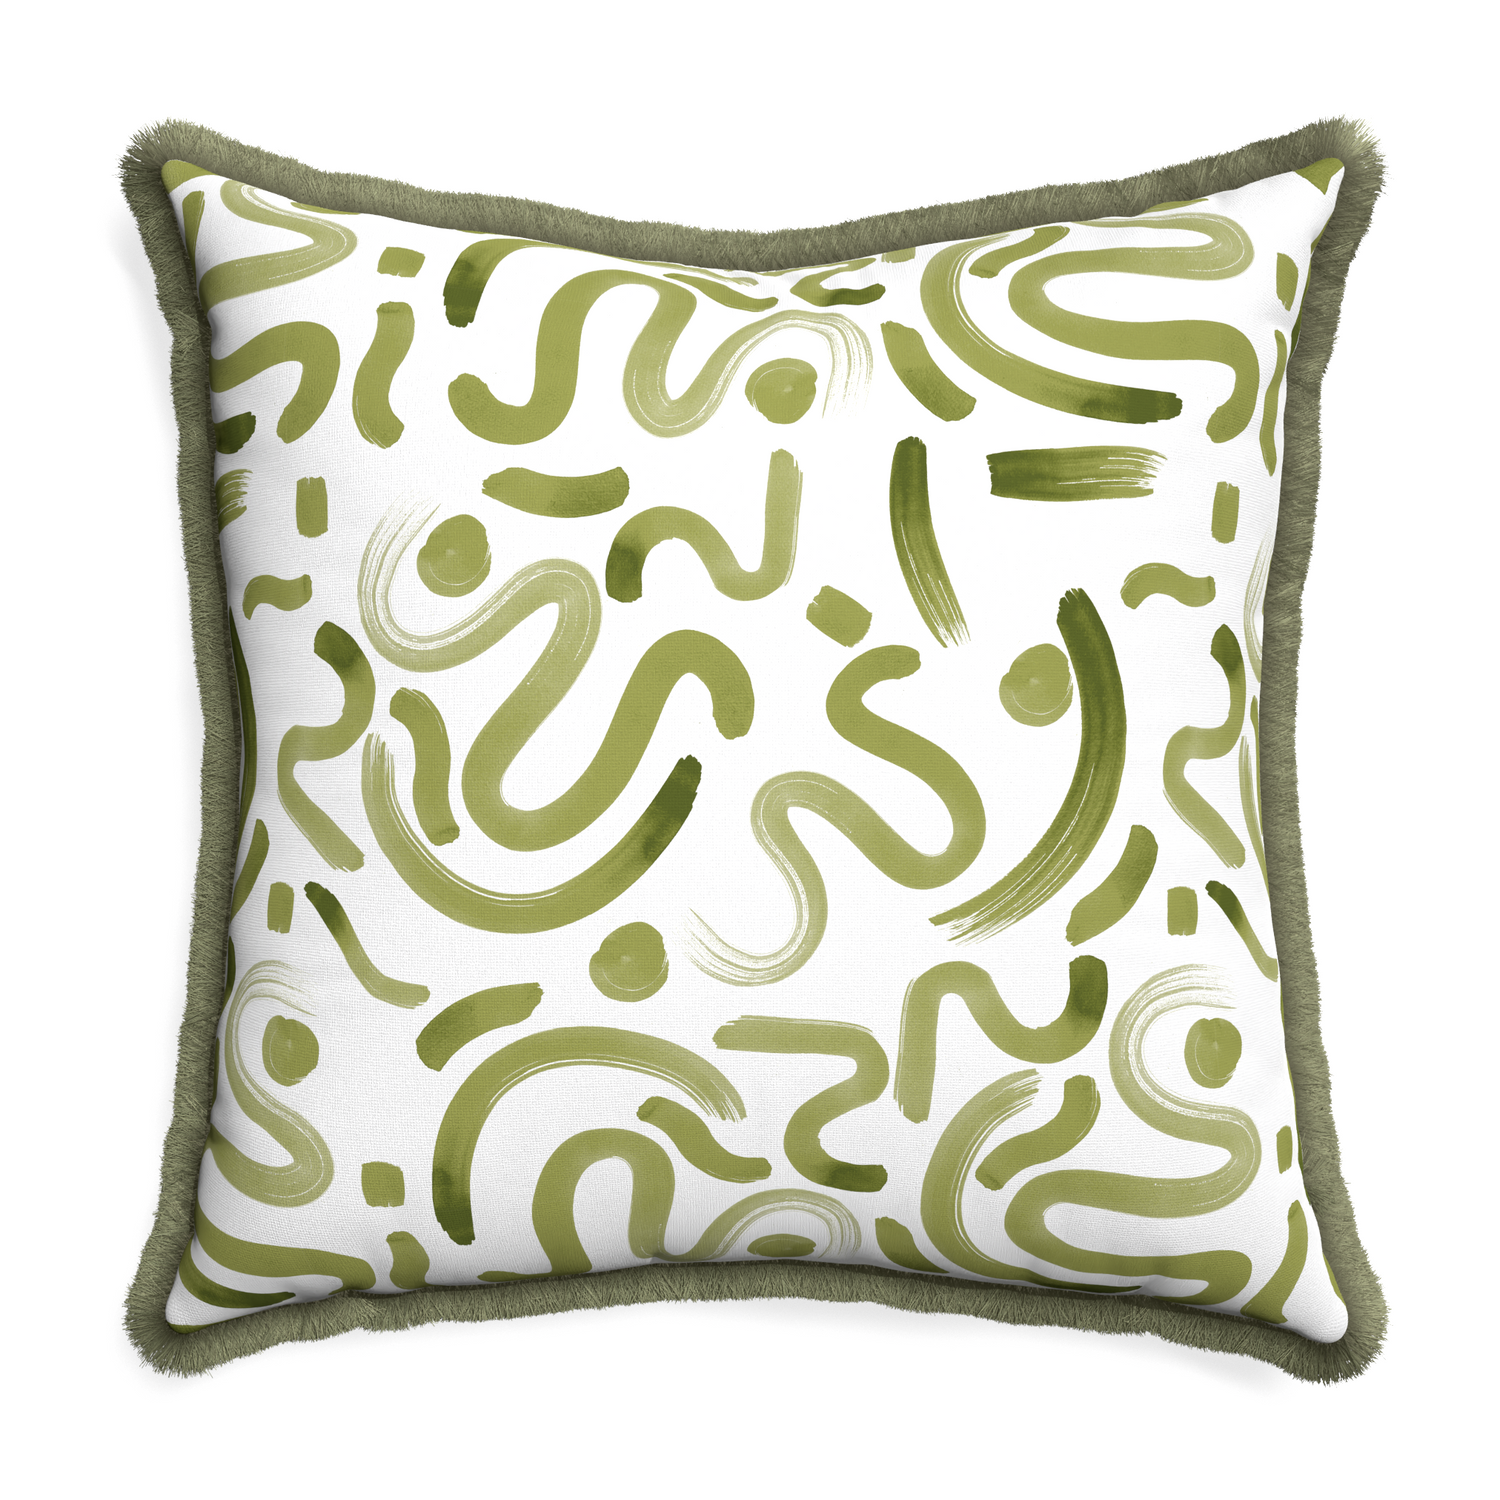 Euro-sham hockney moss custom pillow with sage fringe on white background